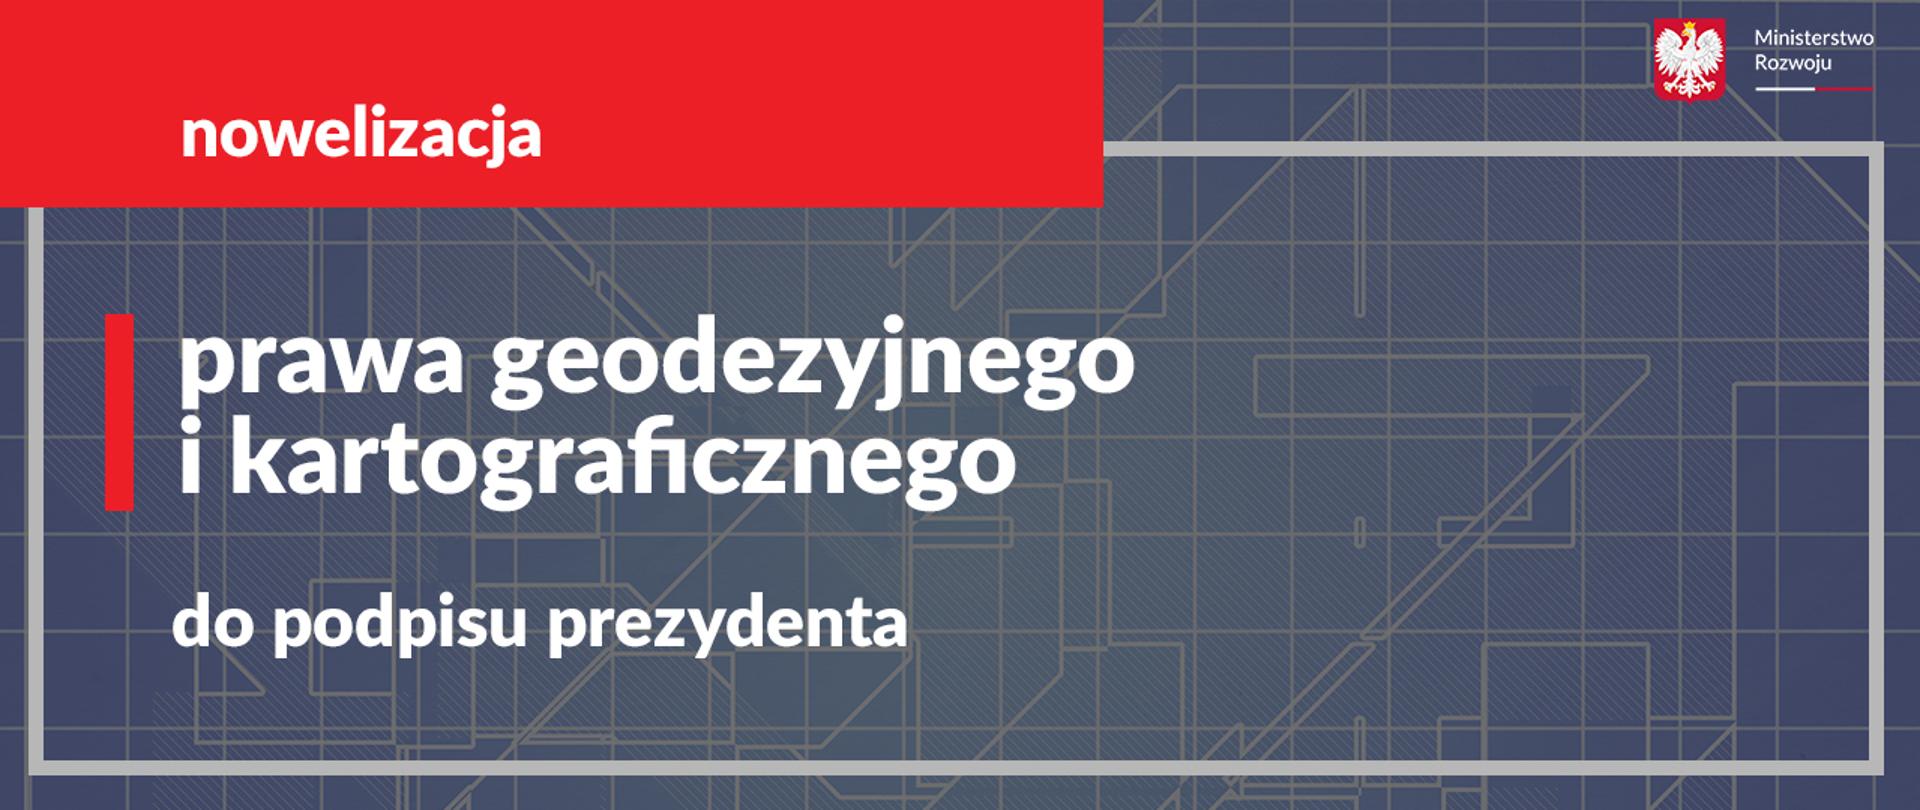 Nowelizacja prawa geodezyjnego i kartograficznego do podpisu prezydenta.